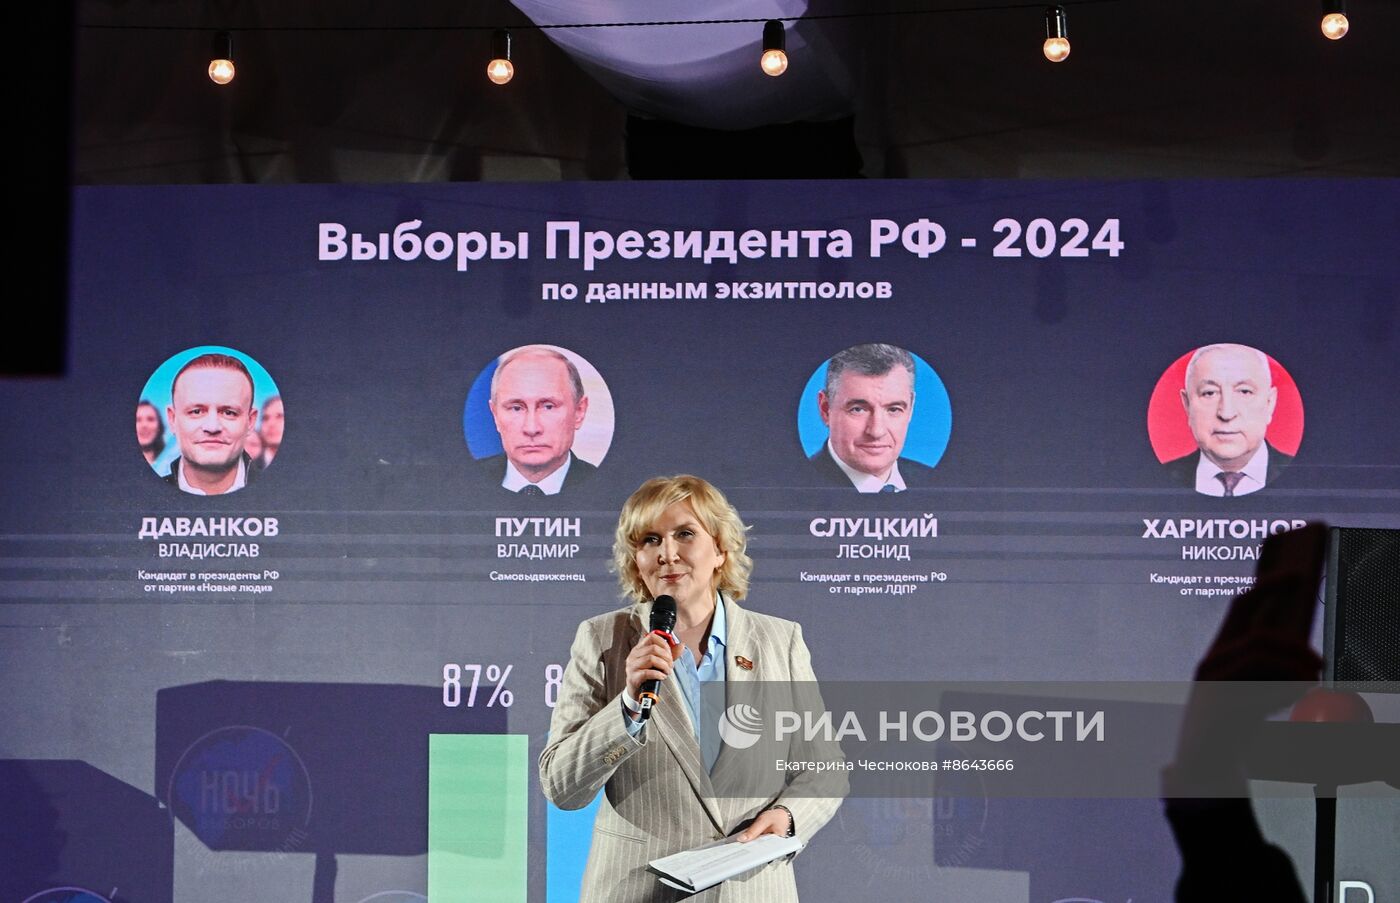 Всероссийский онлайн-марафон "Ночь выборов-2024. У России нет границ"